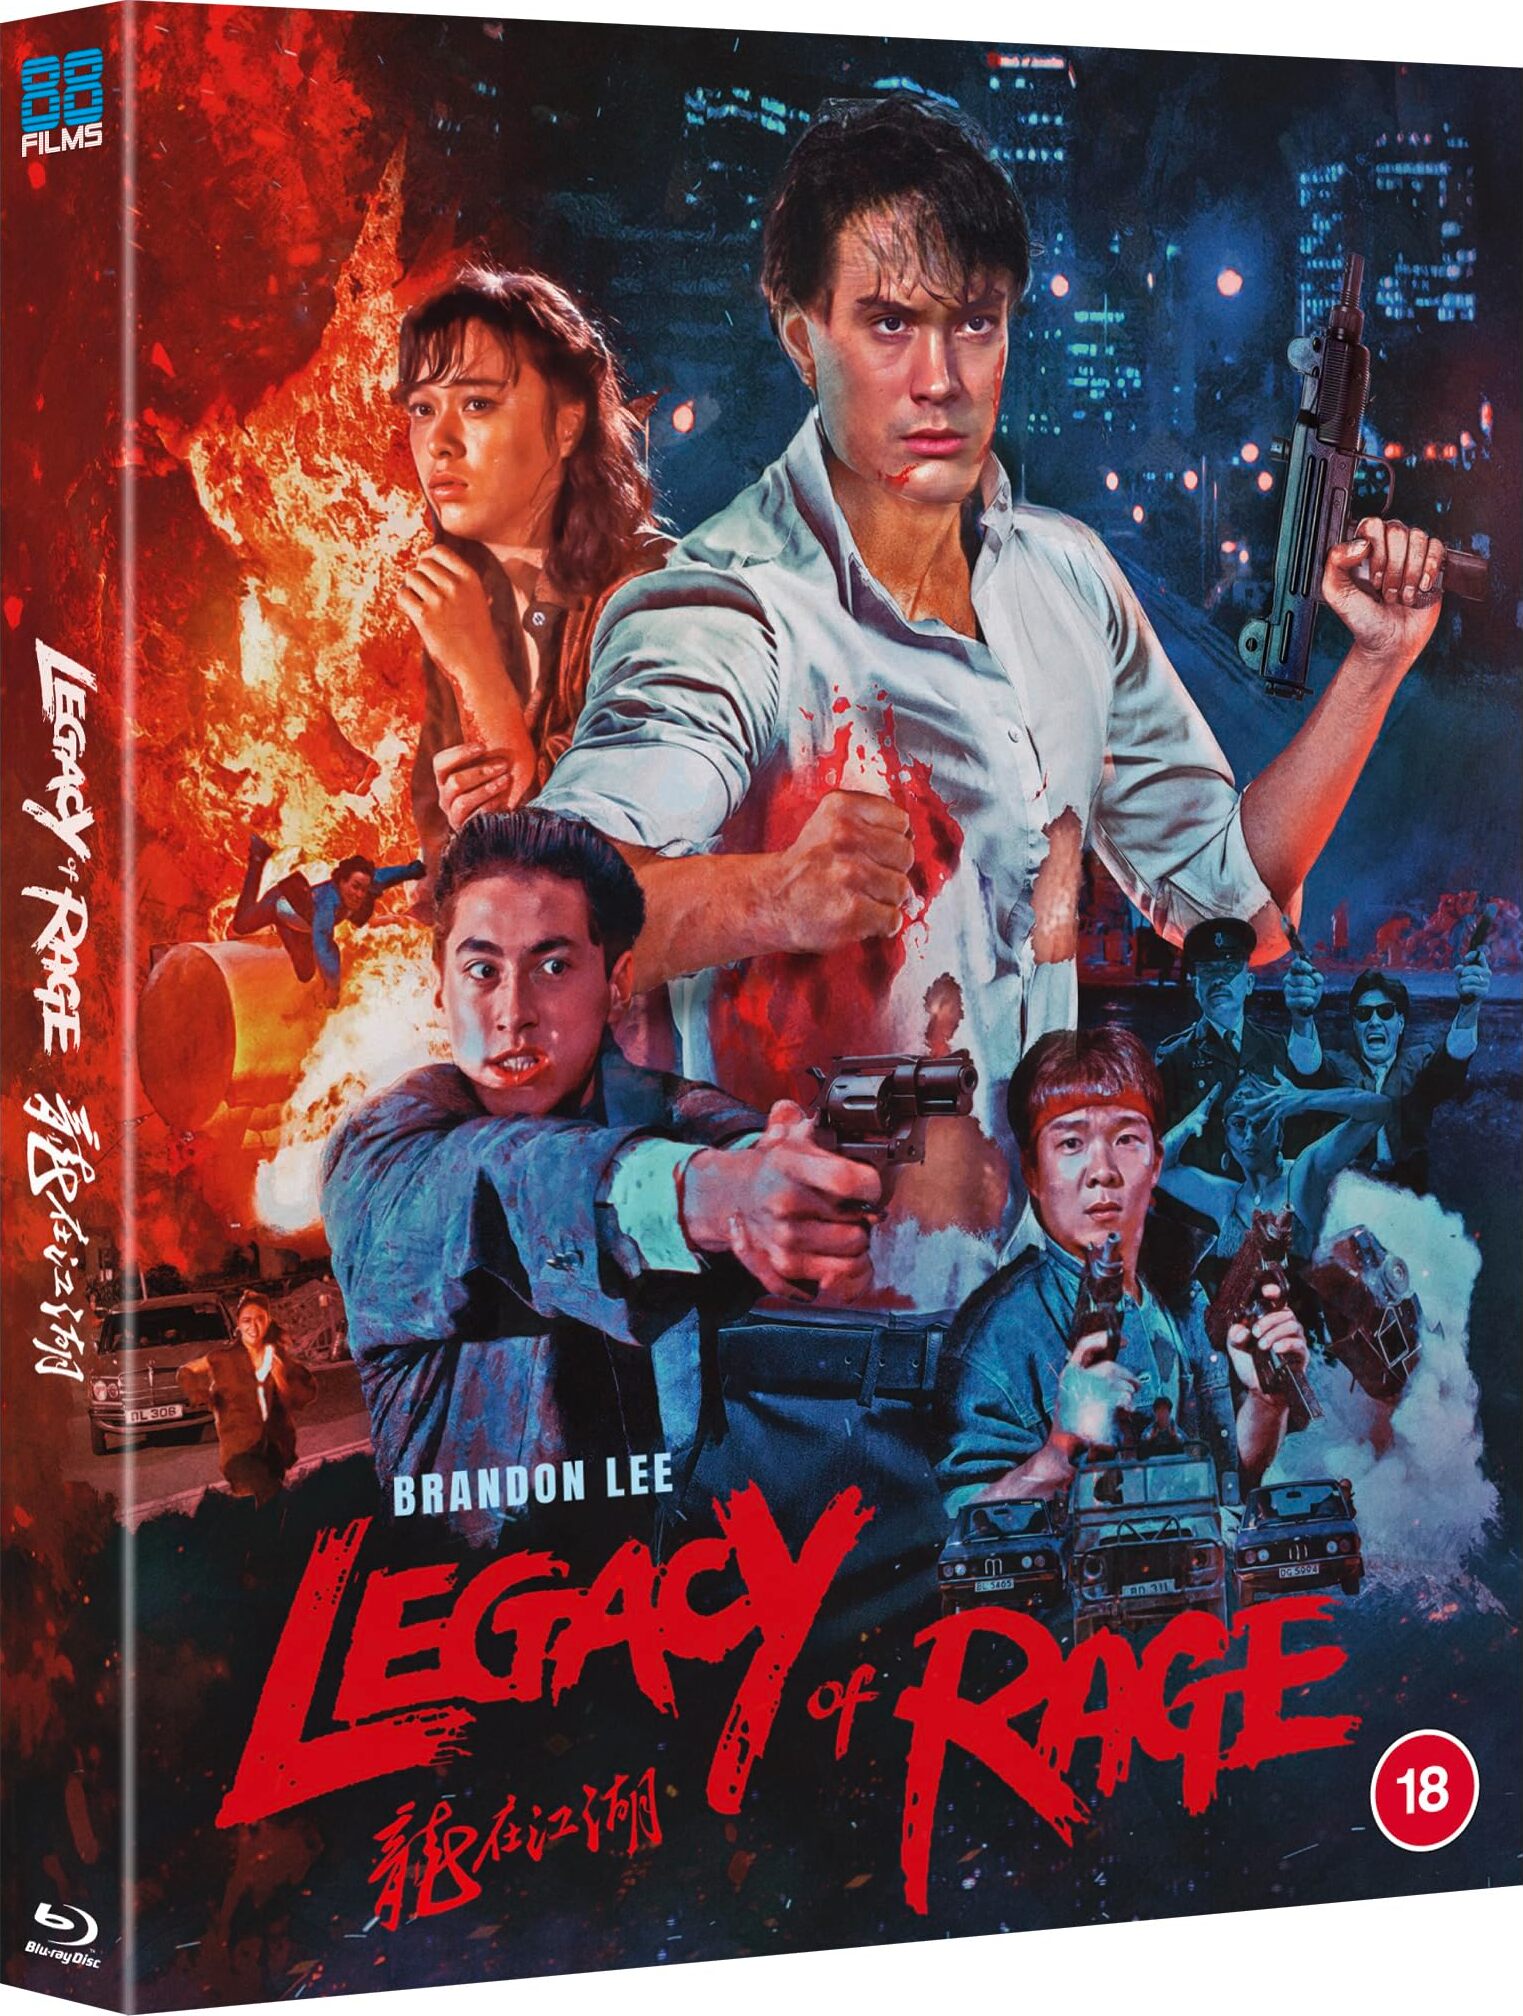 Legacy of Rage Blu-ray (Lung zoi gong woo | Lóng zài jiāng hú | 龍 